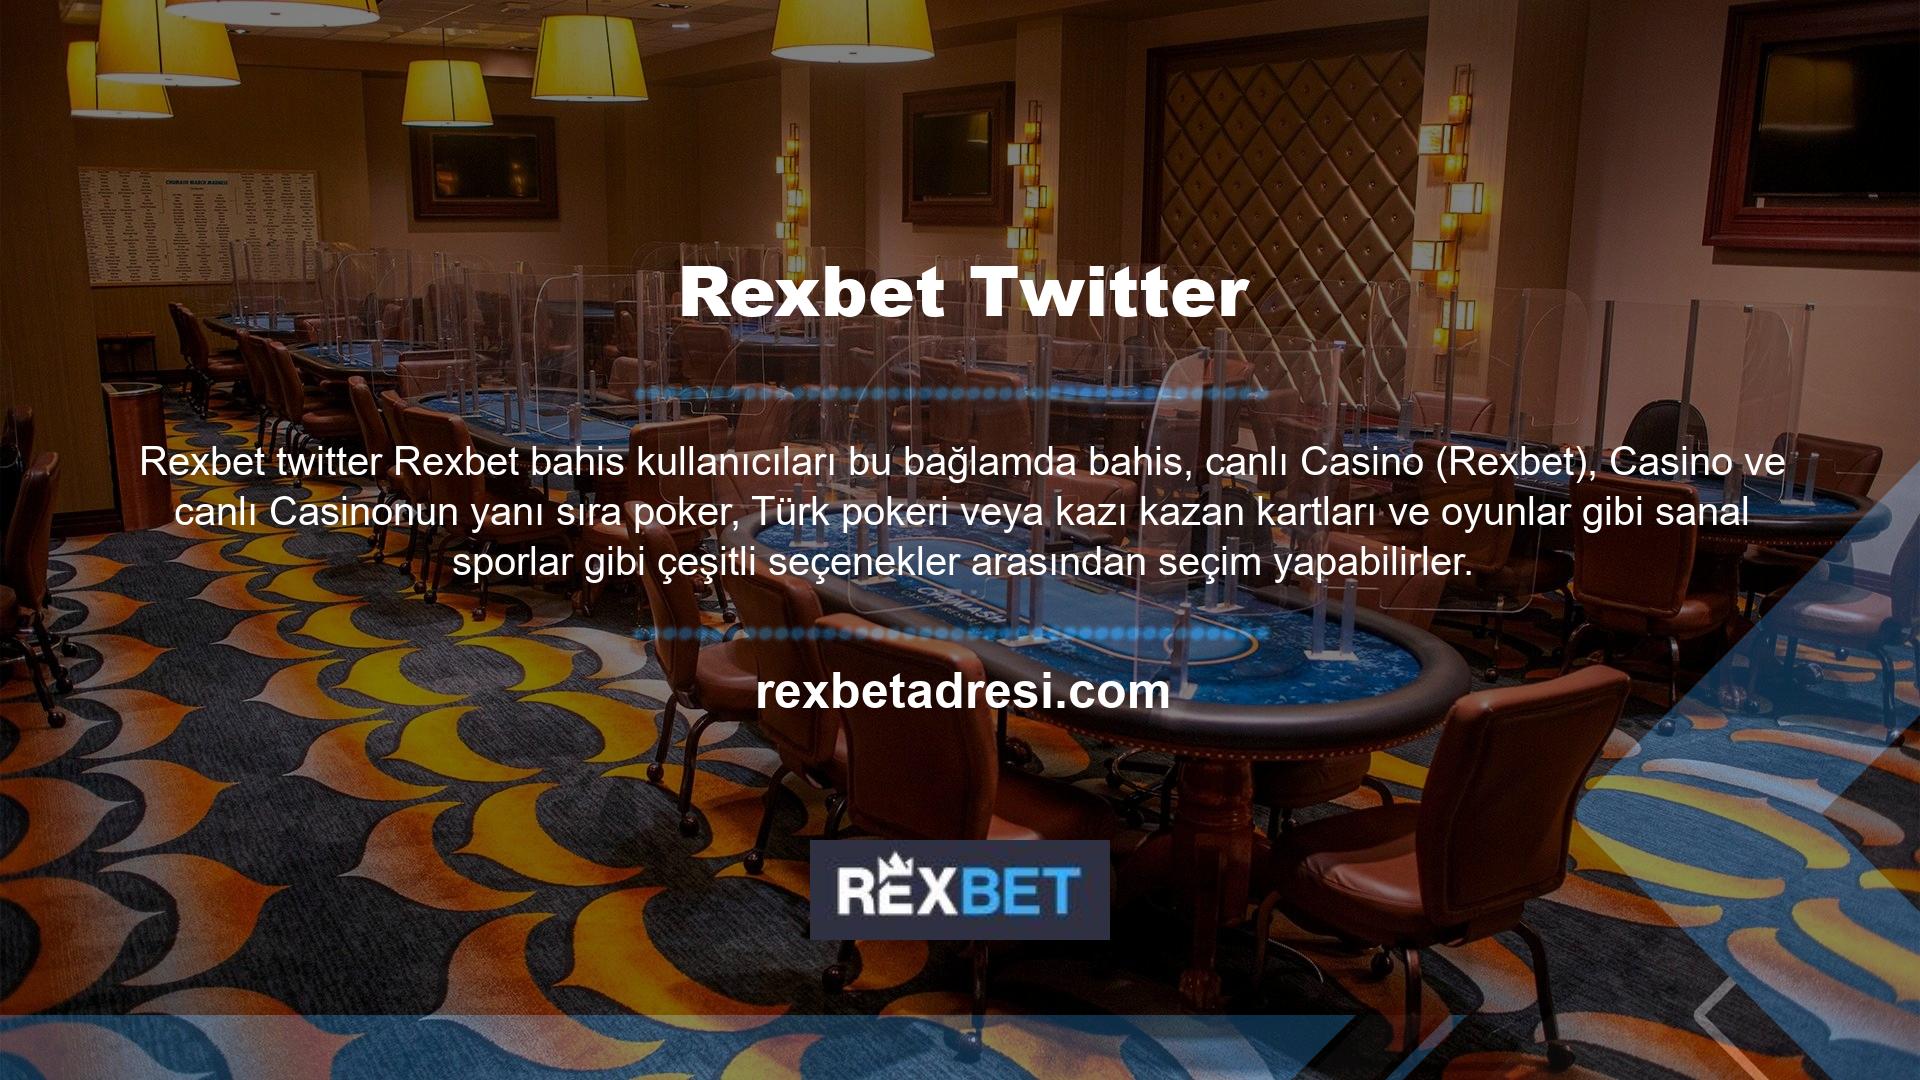 Rexbet Twitter'ın güncel giriş adresi Rexbet Twitter olarak onaylandı